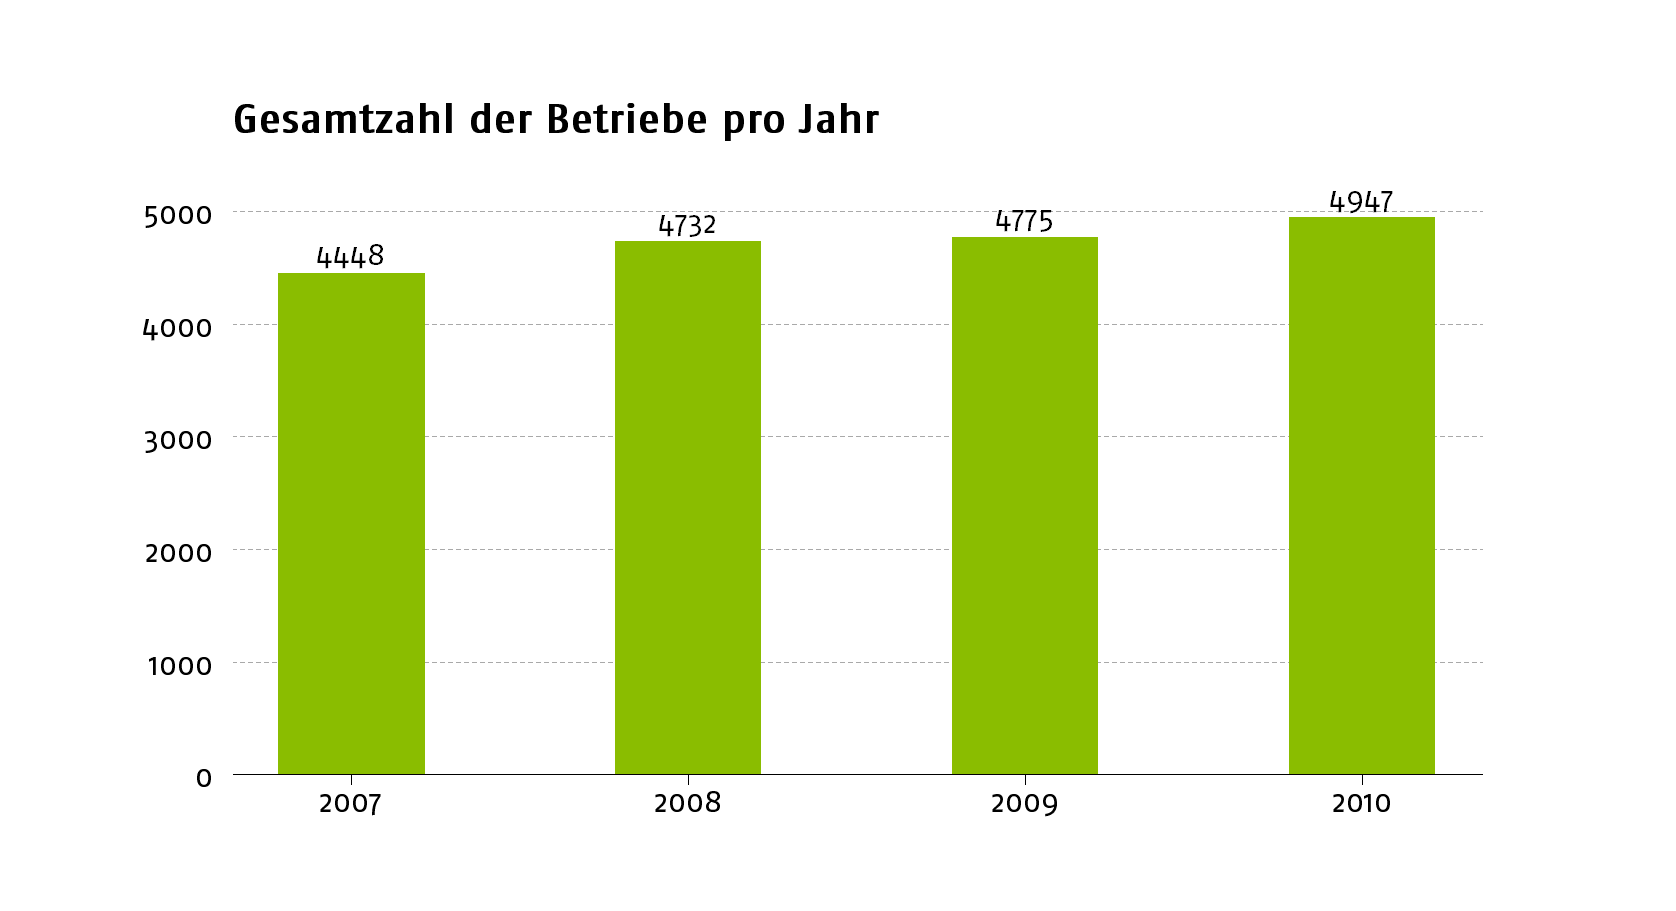 Das Bild zeigt ein Balkendiagramm. Die Höhe der Balken stellt die Anzahl der Betriebe in Thru.de für die Berichtsjahre 2007 bis 2010 dar. Die Anzahl nimmt dabei von 4448 auf 4947 zu.